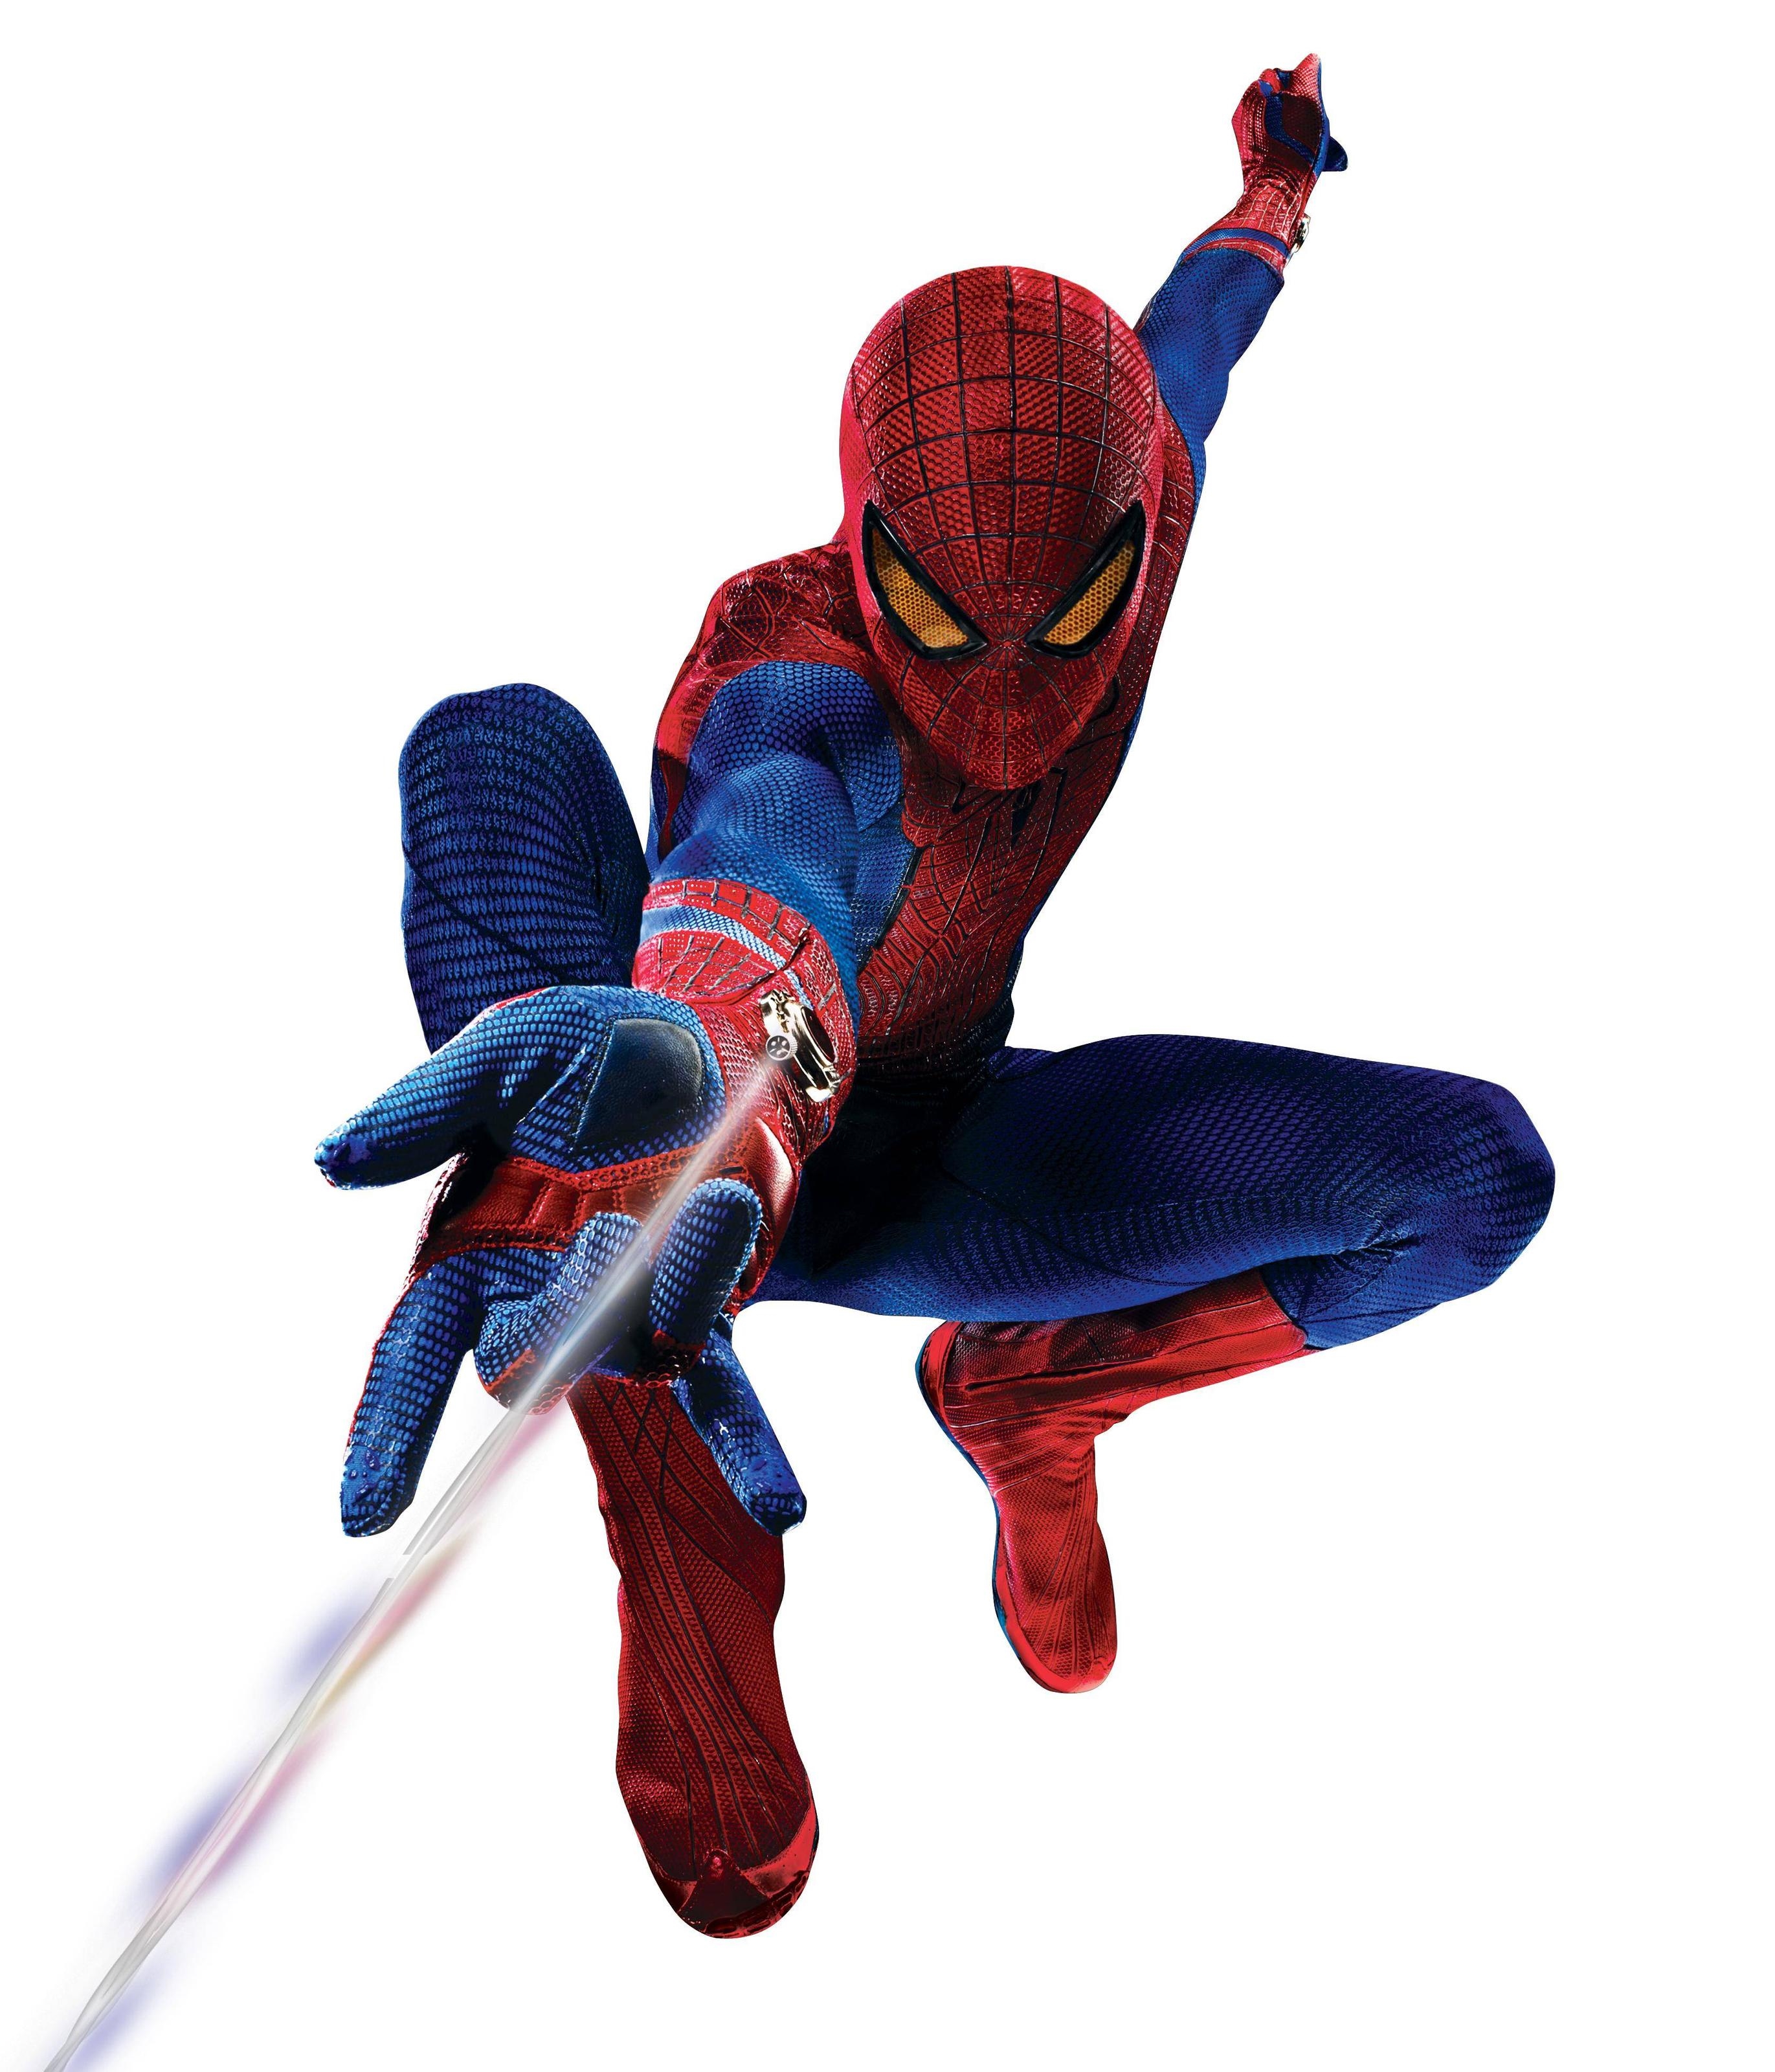 Spider Man Garfield Tasma - Amazing Spider Man Spider Man - HD Wallpaper 